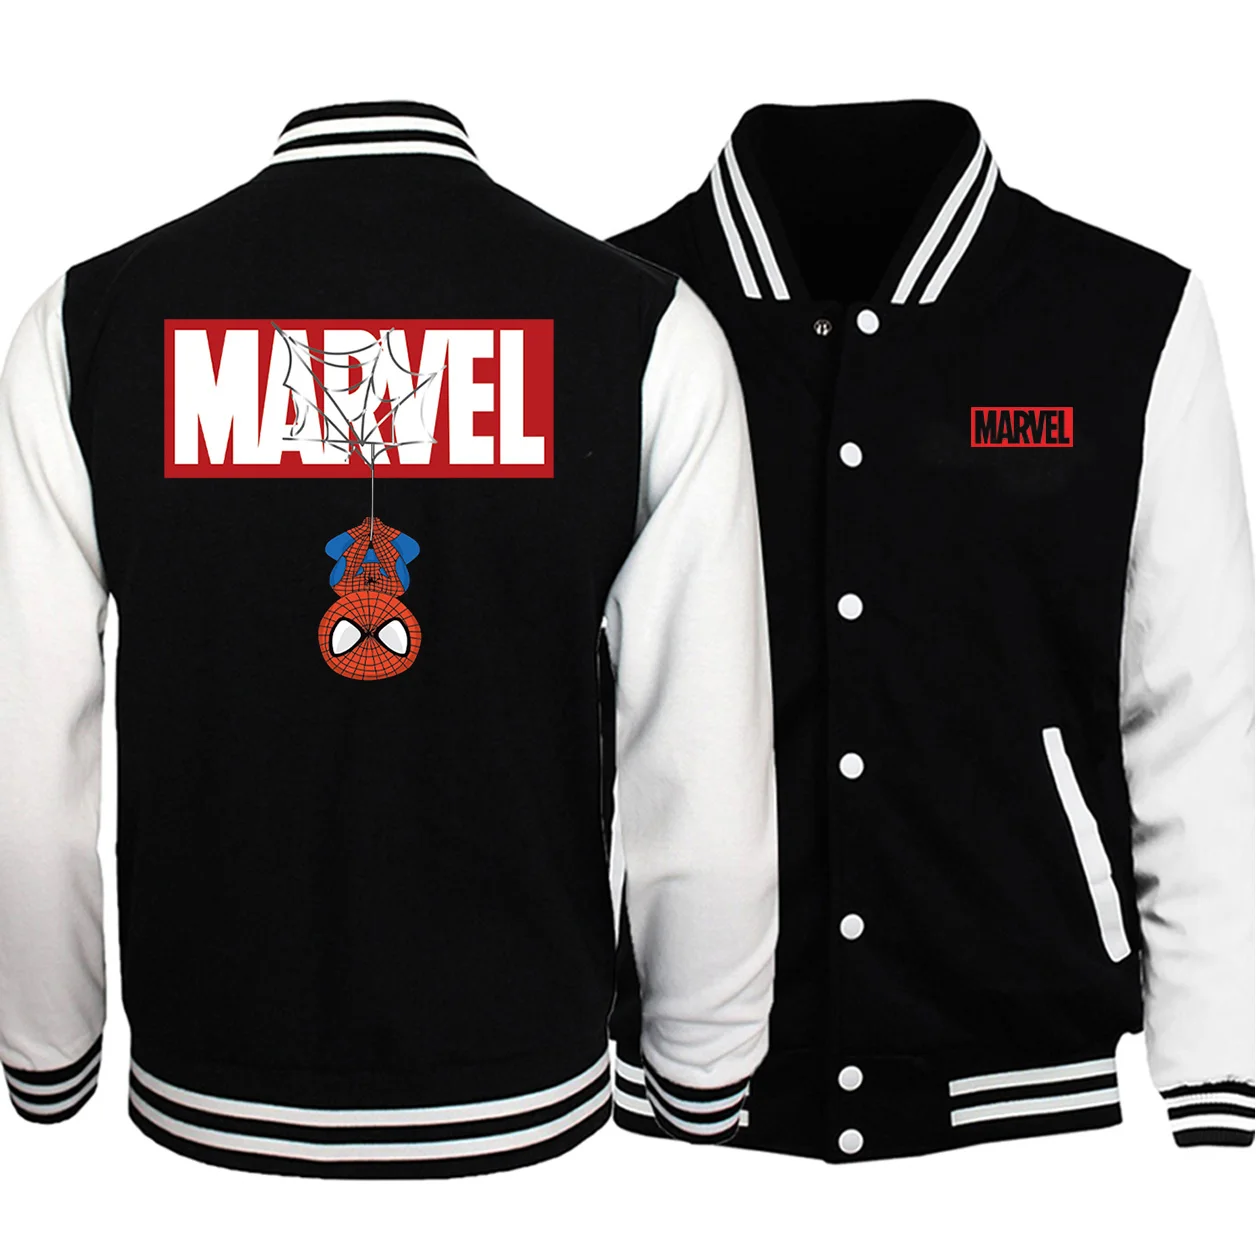 MARVEL, принт Человека-паука, мужская бейсбольная куртка, осень, новая бейсбольная форма, мужская повседневная спортивная одежда, Мстители, модное пальто